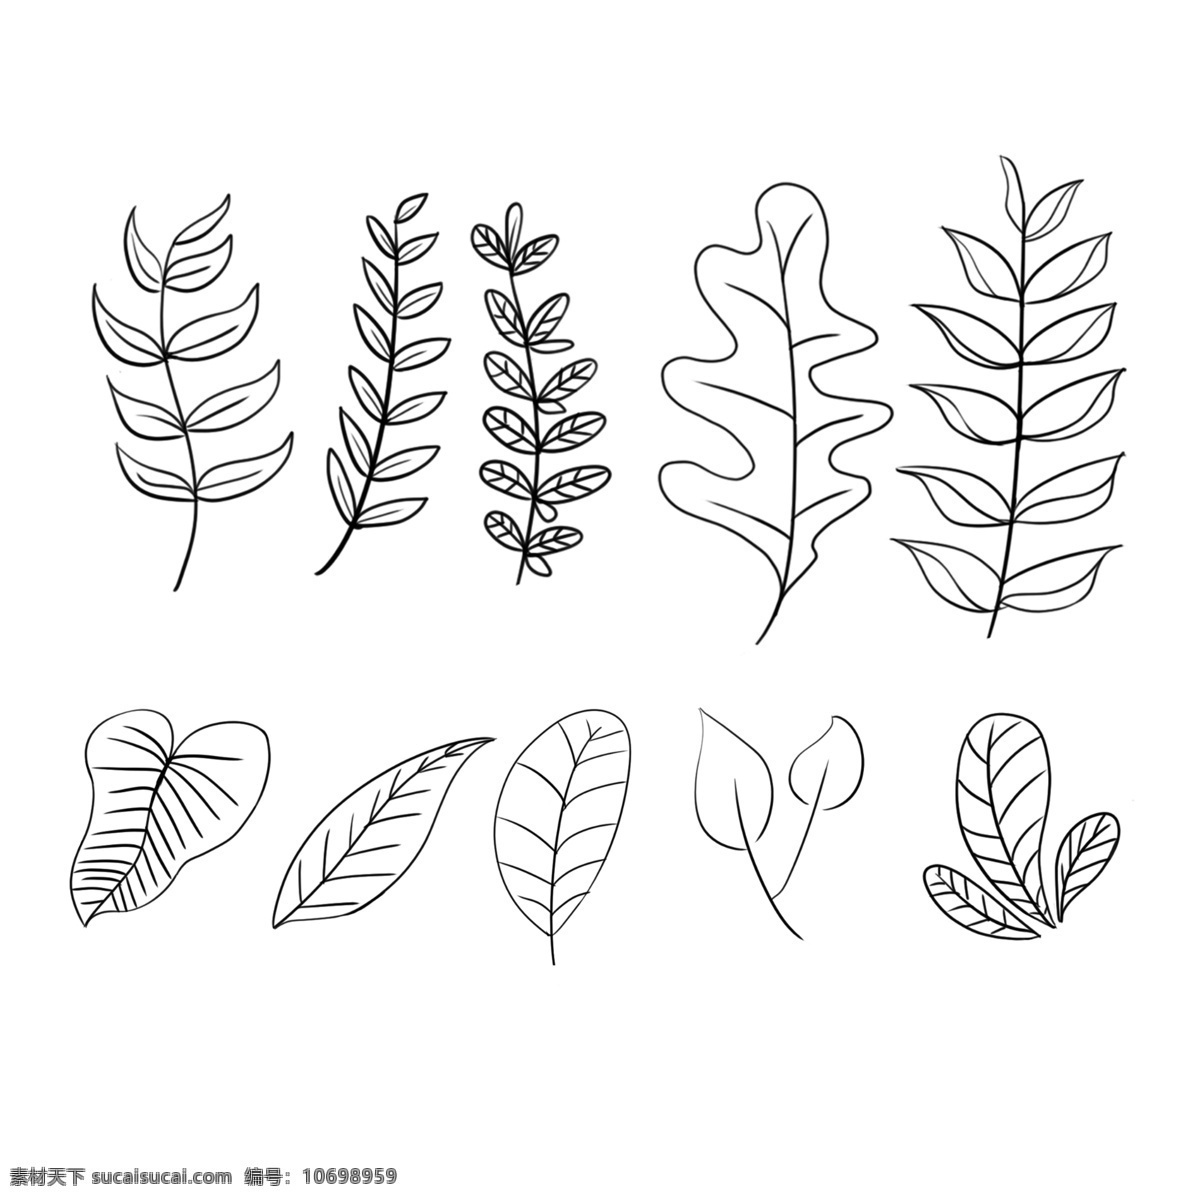 手绘 大自然 植物 线图 树叶 叶子 装饰 黑白 树叶线图 白色 黑色 简单植物 植被 大自然植物